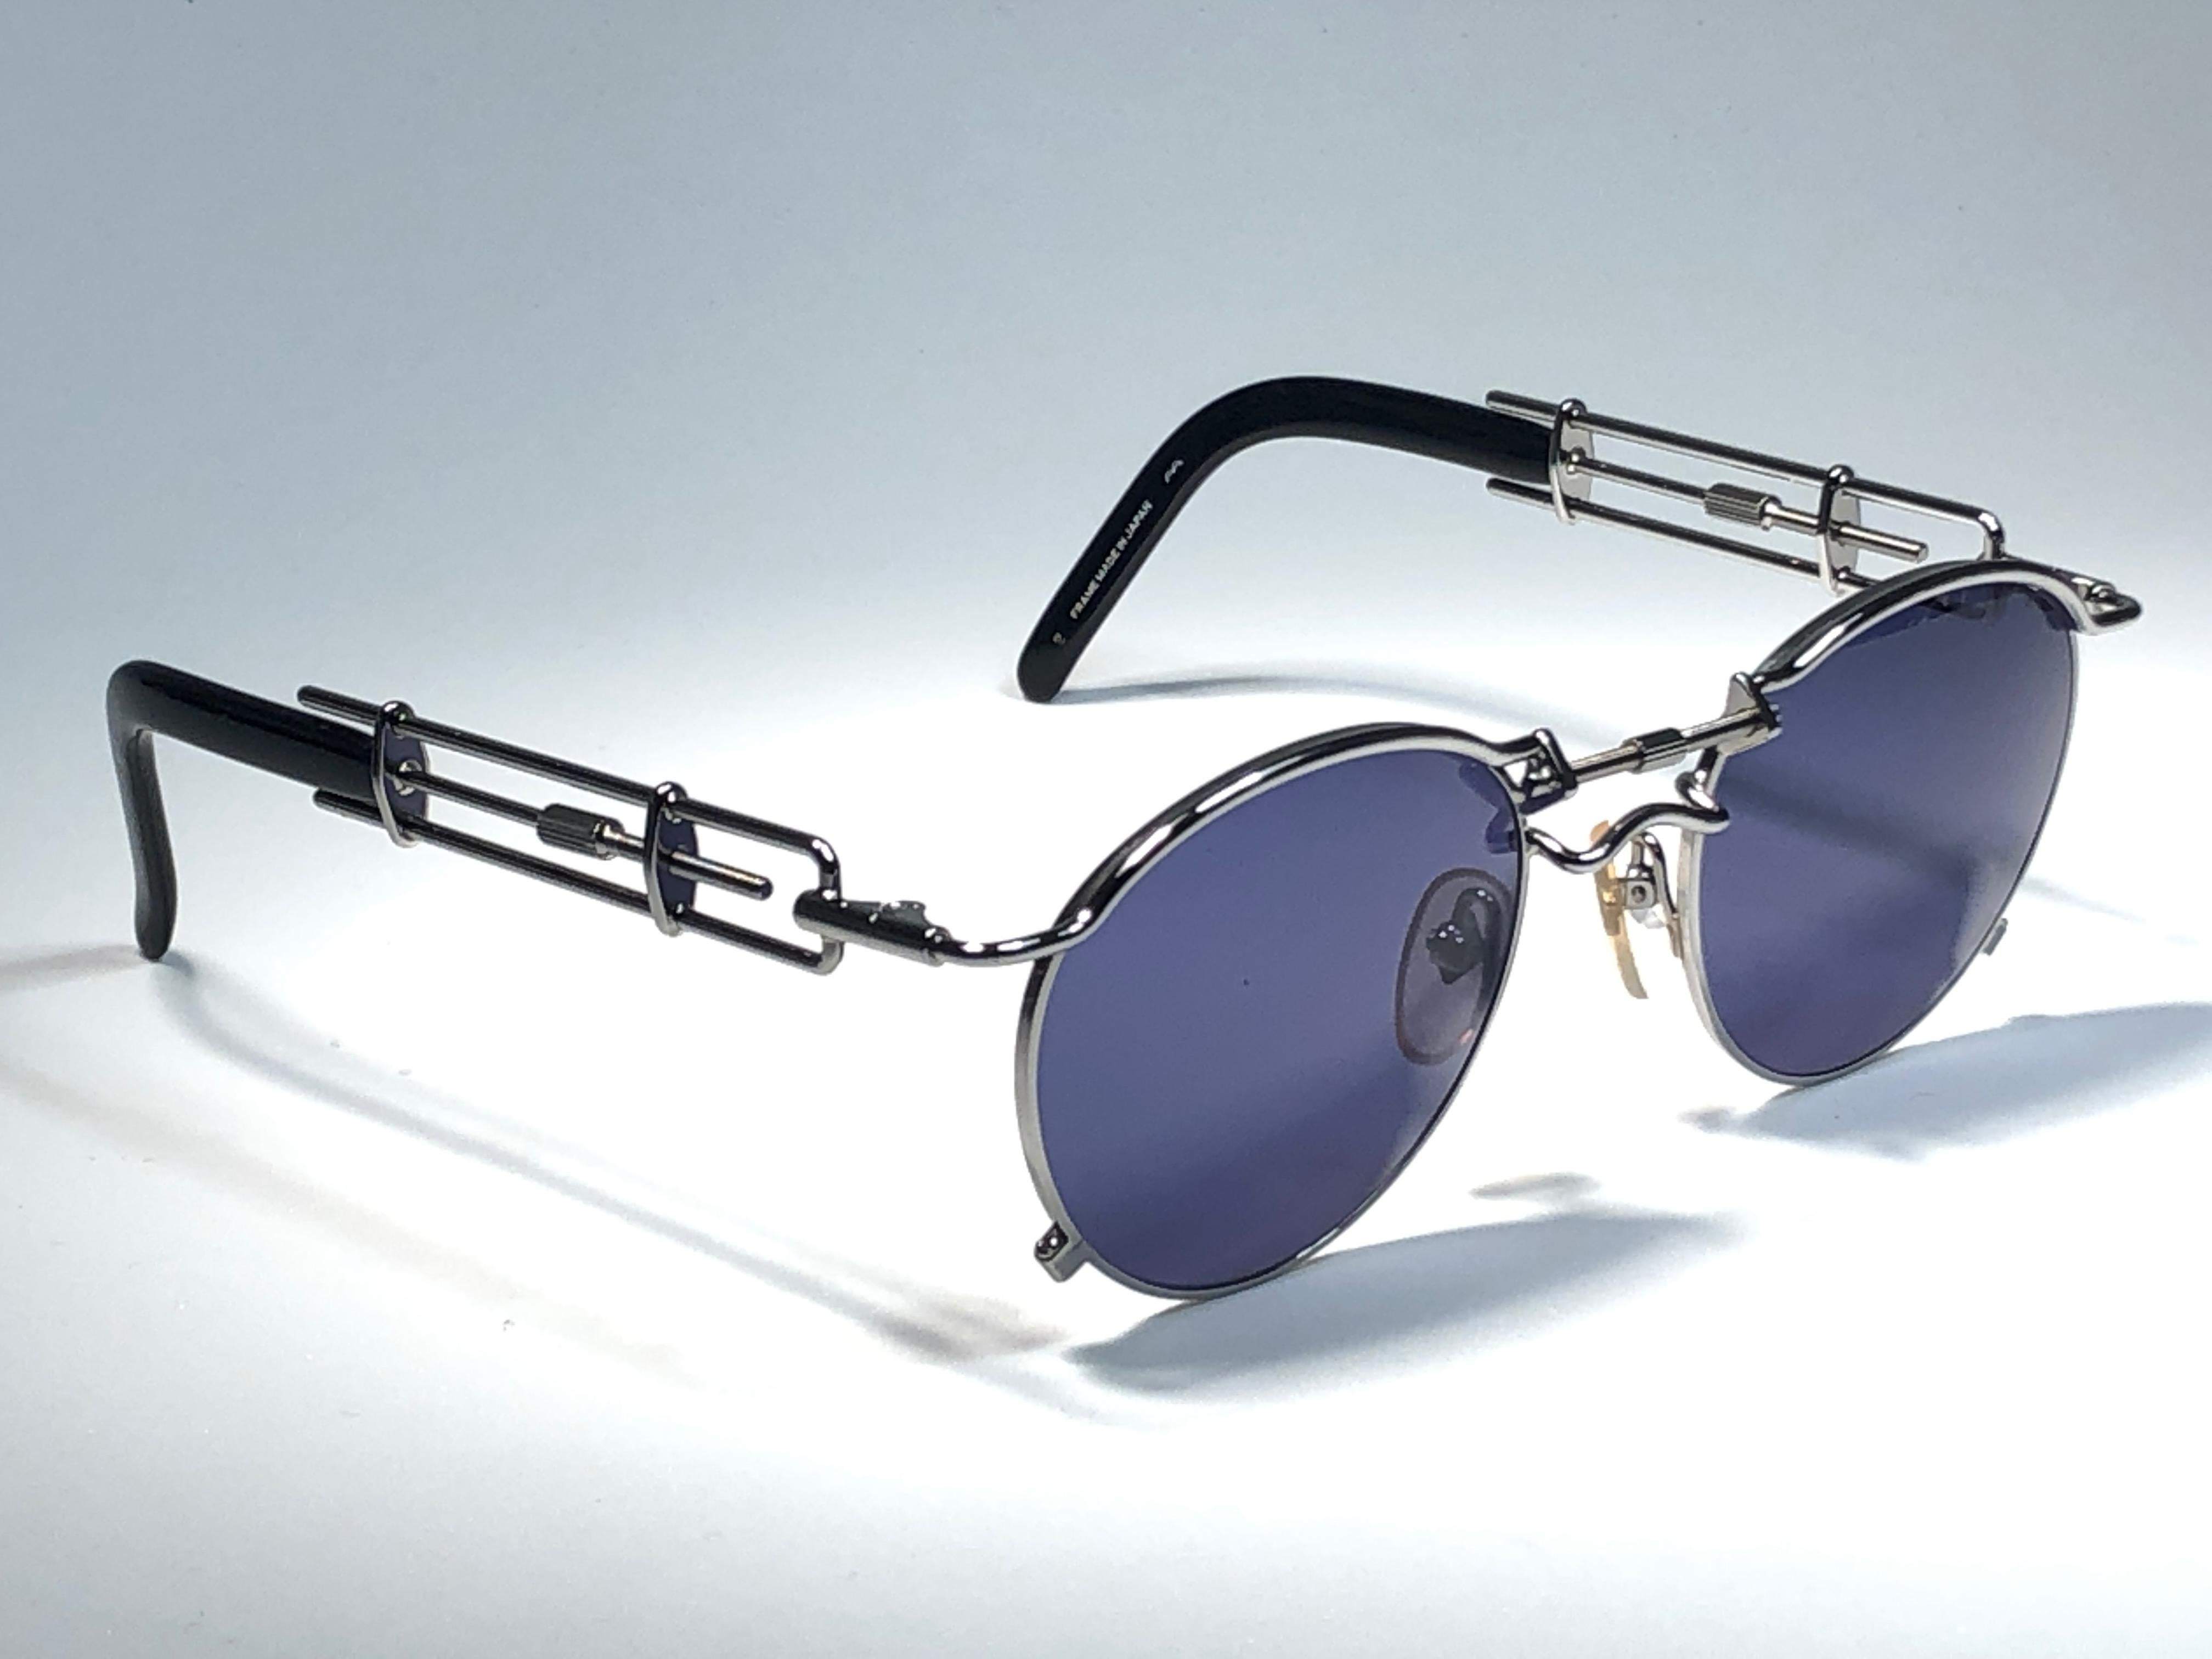 jean paul gaultier sunglasses 56-0174